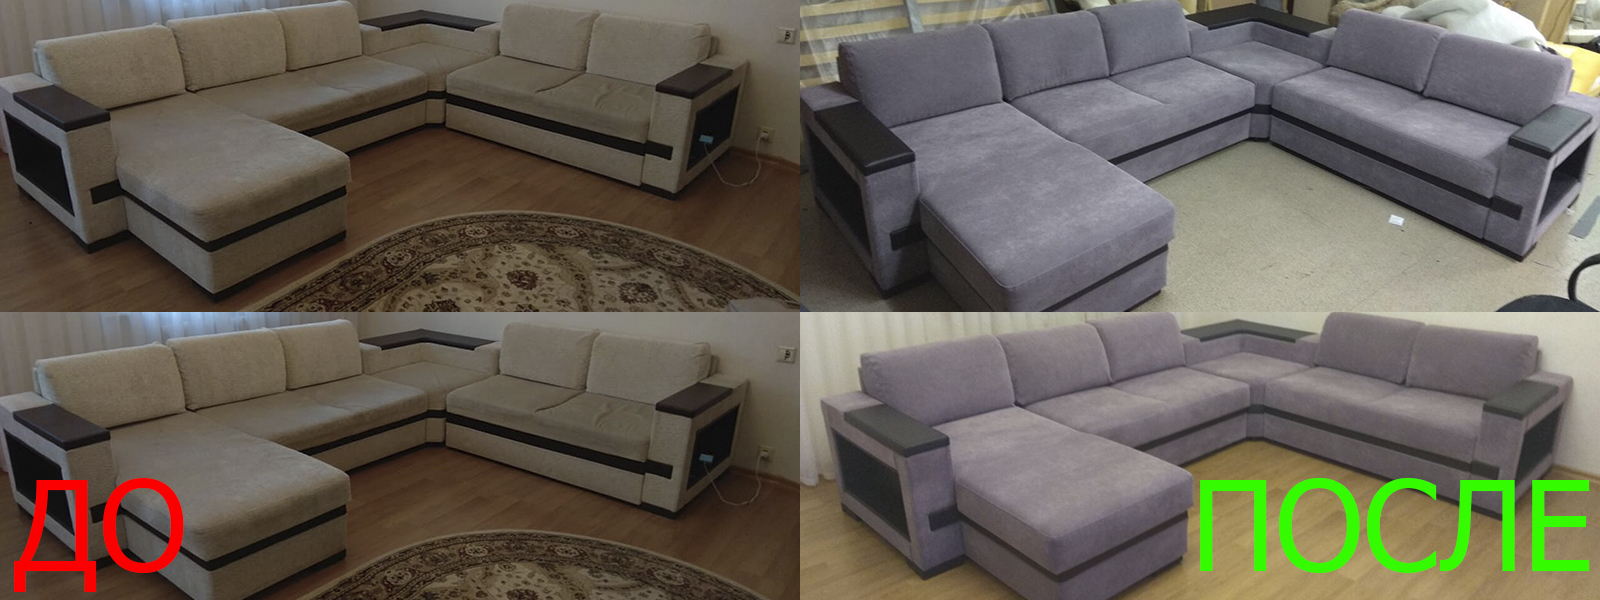 Обтяжка мебели на дому в Евпатории недорого по адекватной цене